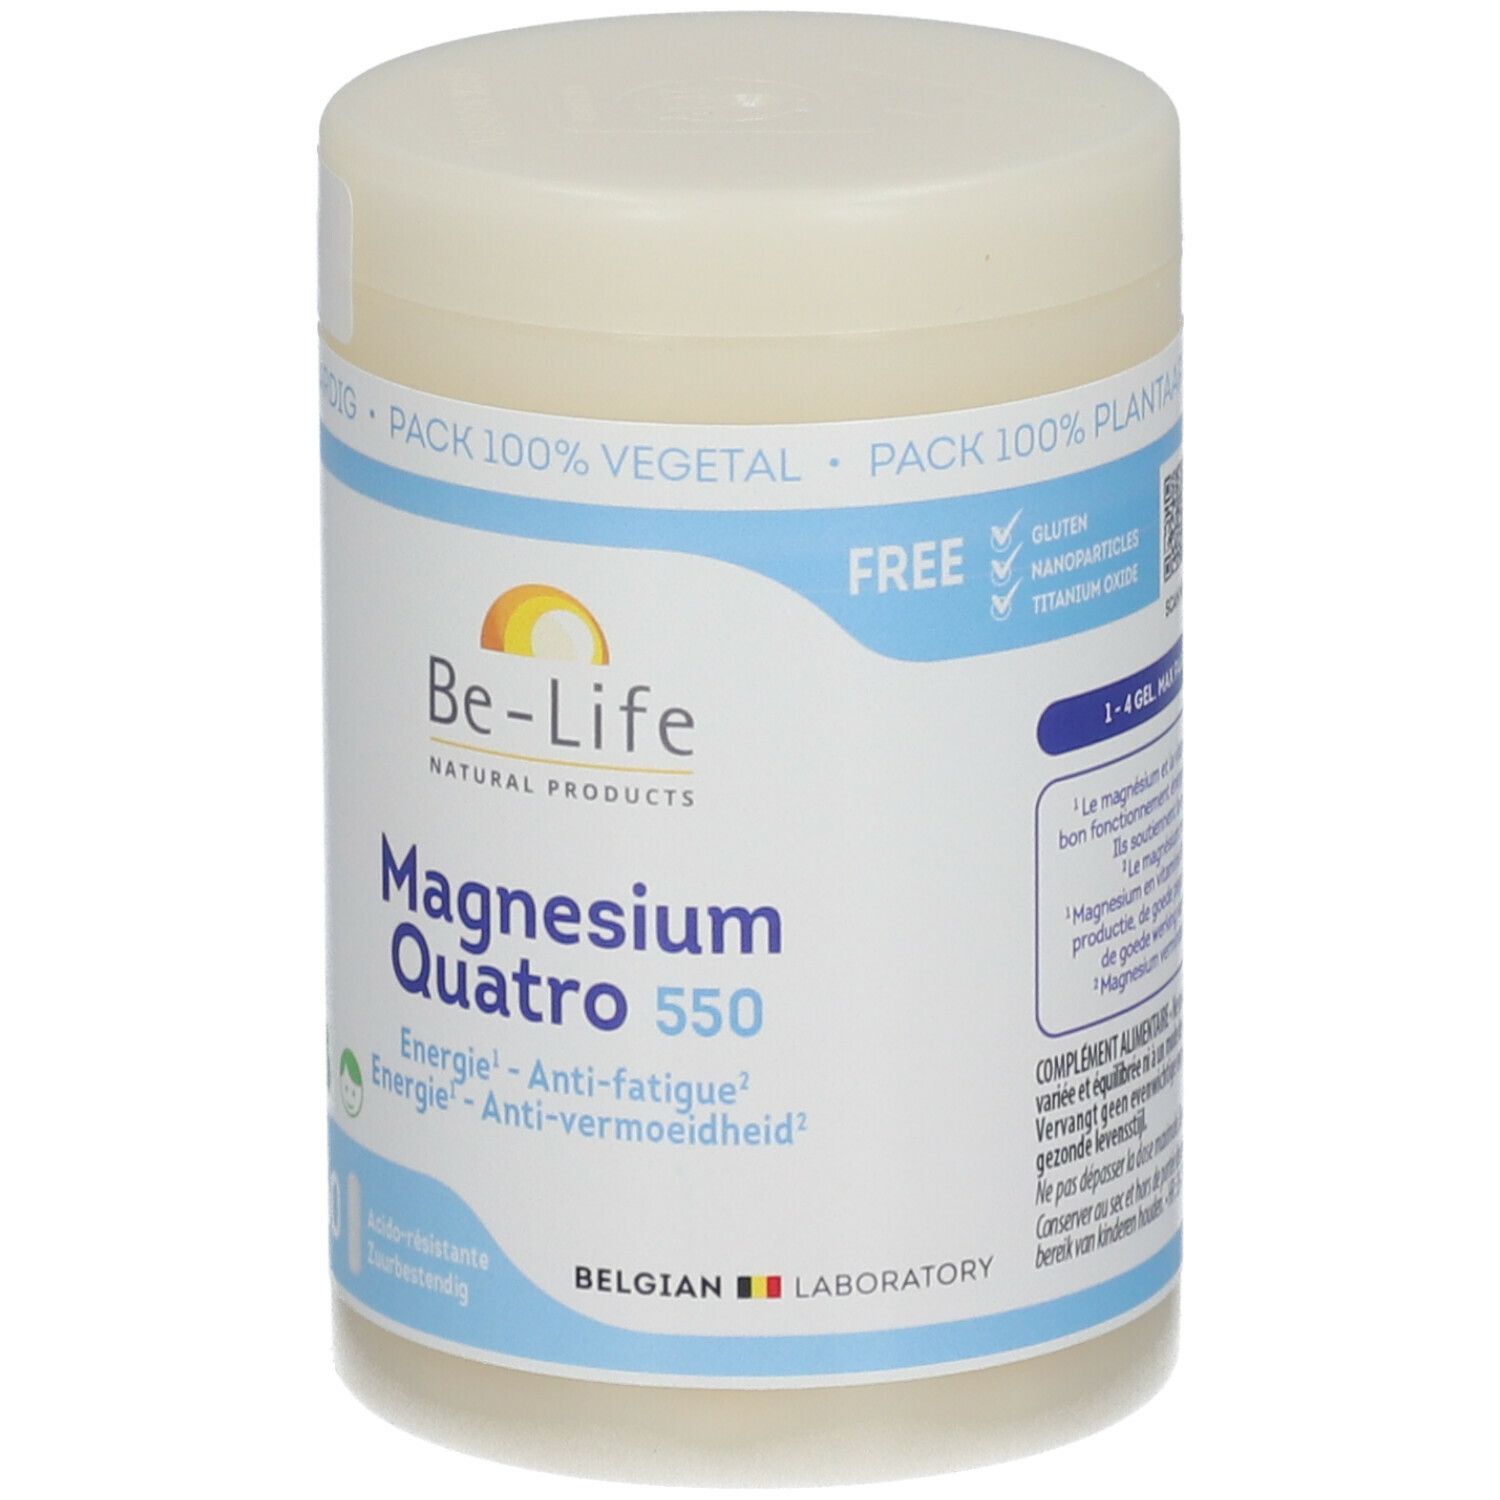 Be-Life Magnesium Quatro 550